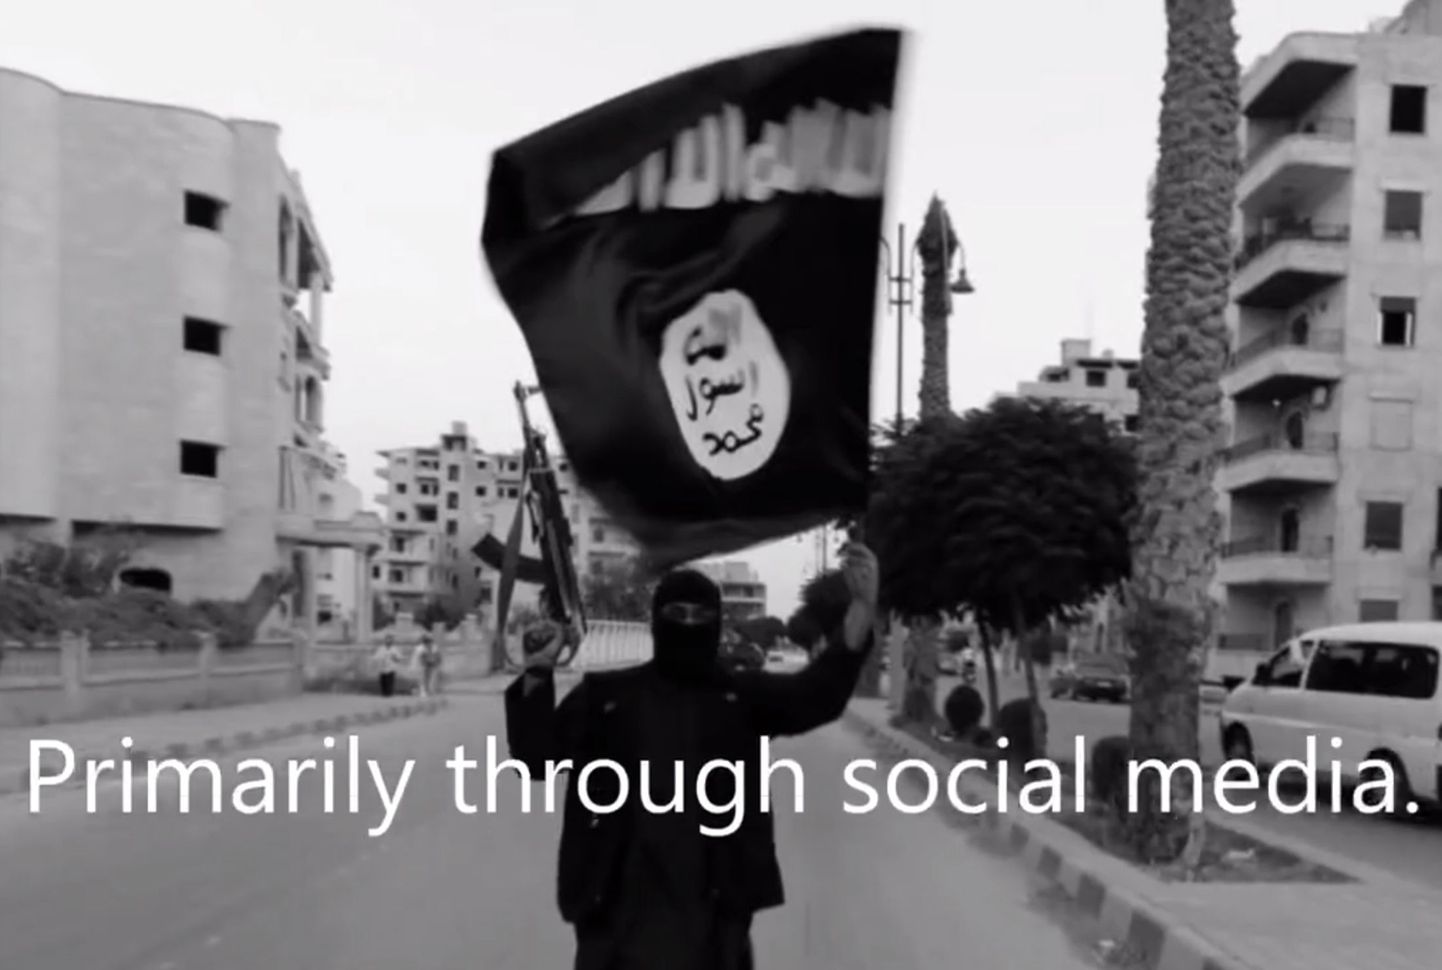 ISISe võitleja Raqqa linnas, mida peetakse äärmusrühmituse tugipunktiks Süürias.